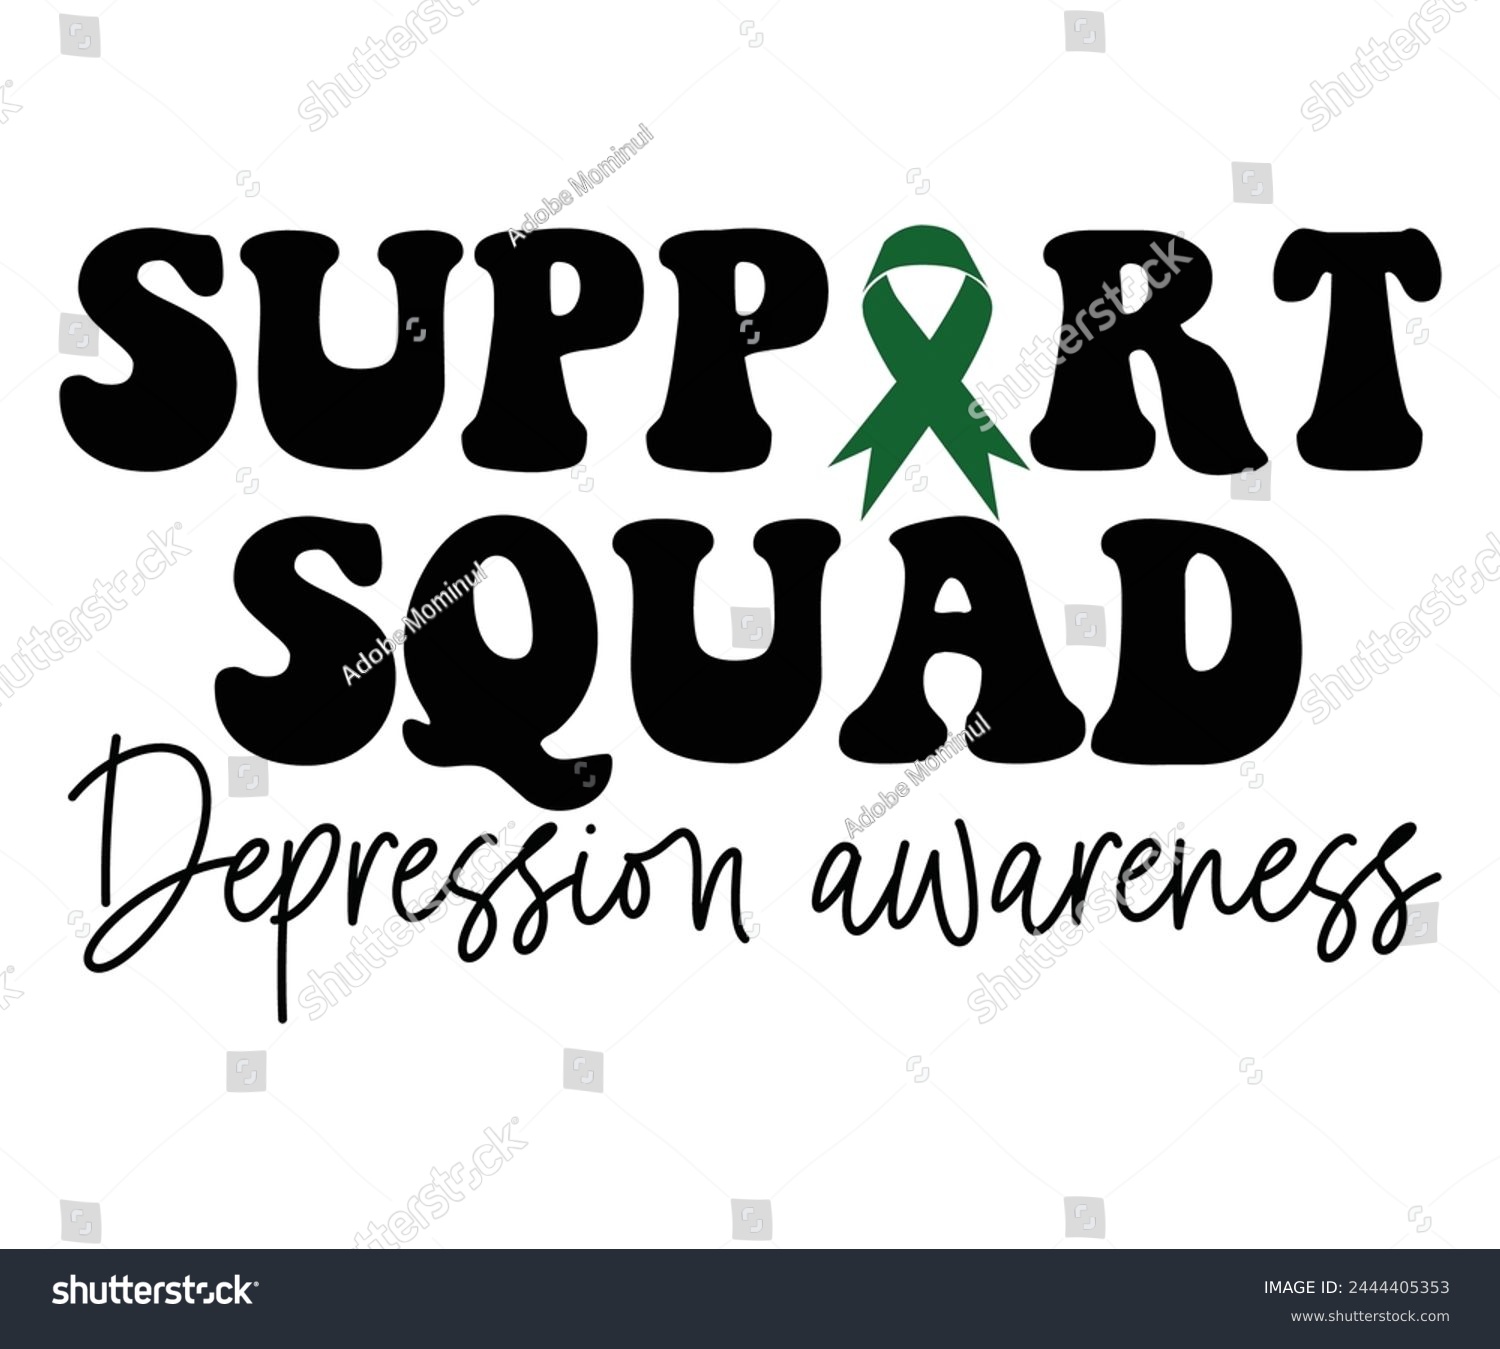 SVG of Support Squad Depression Awareness Svg,Mental Health Svg,Mental Health Awareness Svg,Anxiety Svg,Depression Svg,Funny Mental Health,Motivational Svg,Positive Svg,Cut File,Commercial Use svg